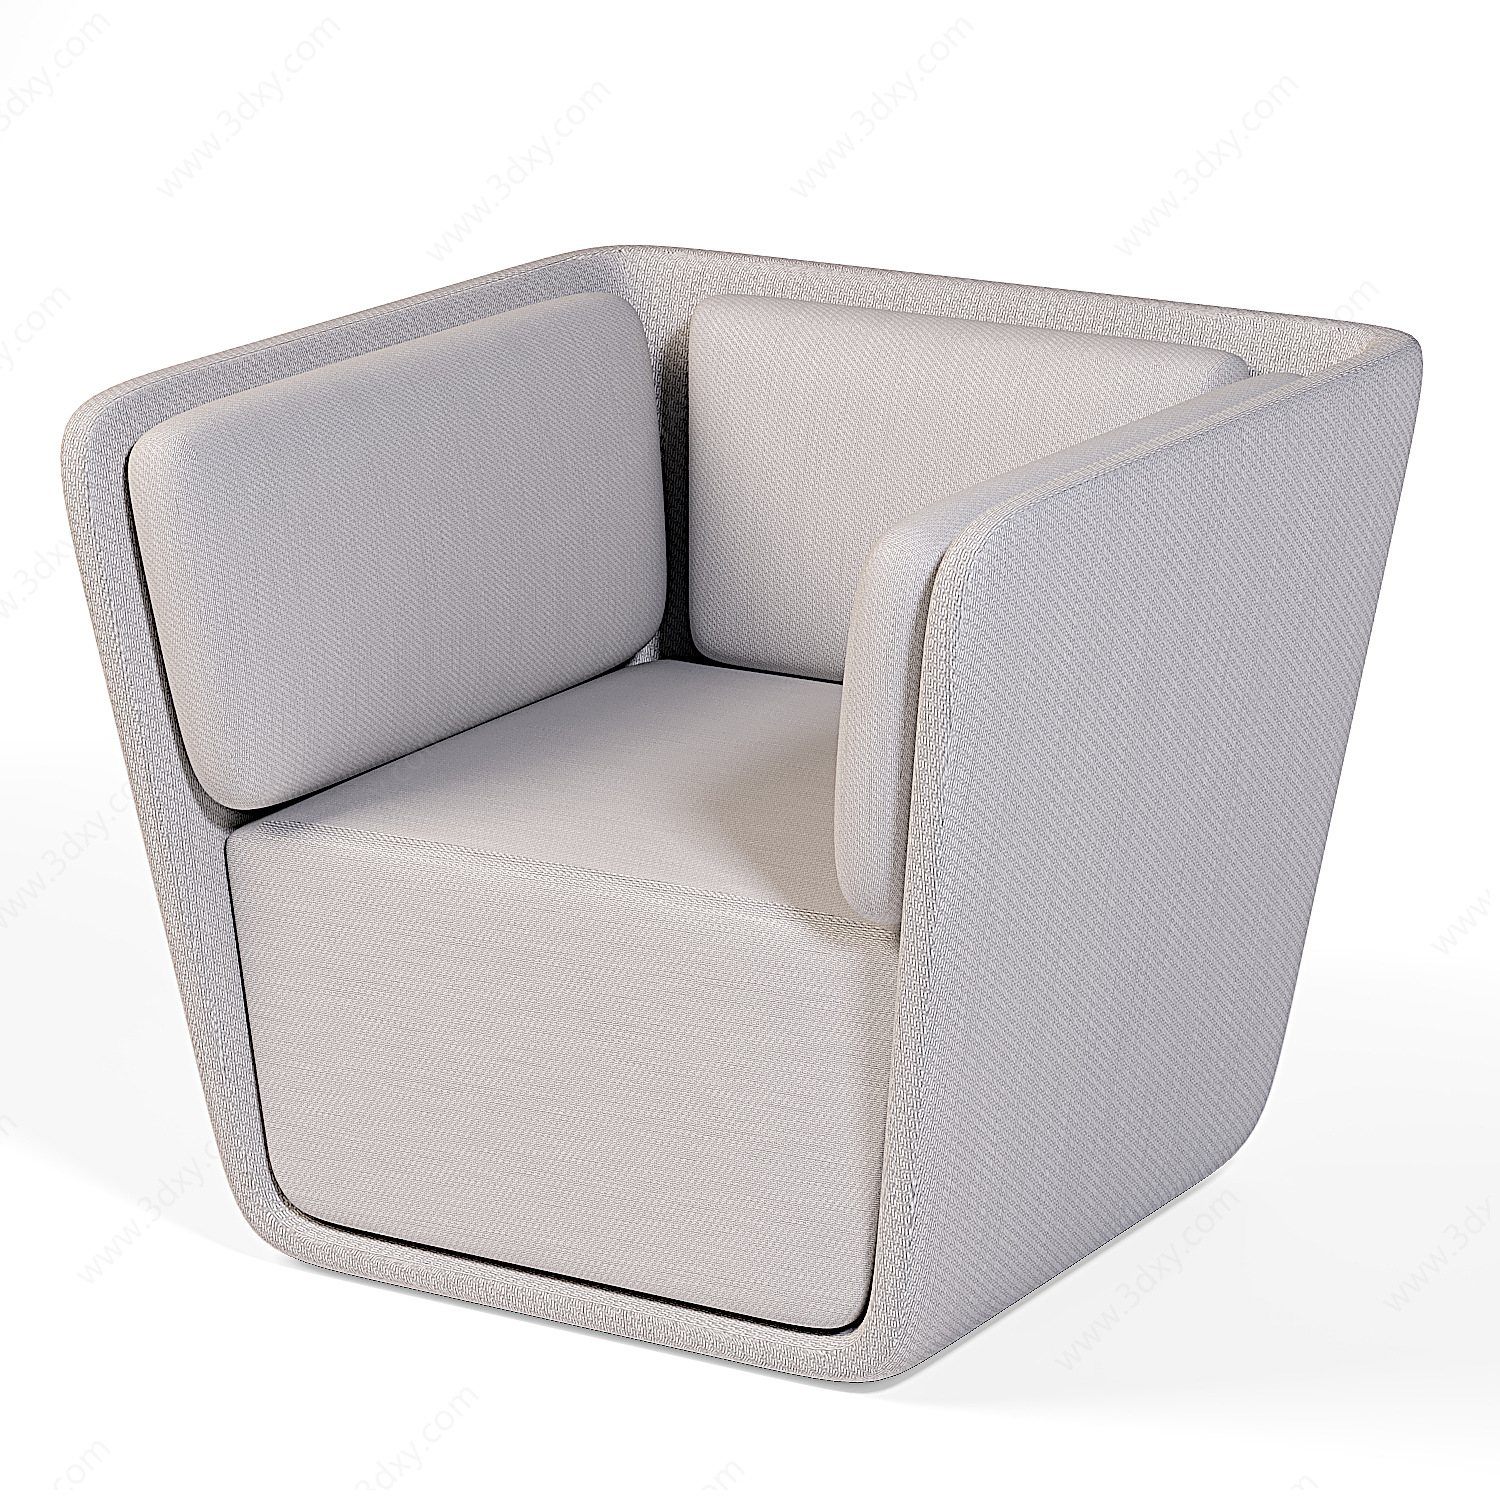 意式轻奢单人休闲沙发靠椅3D模型